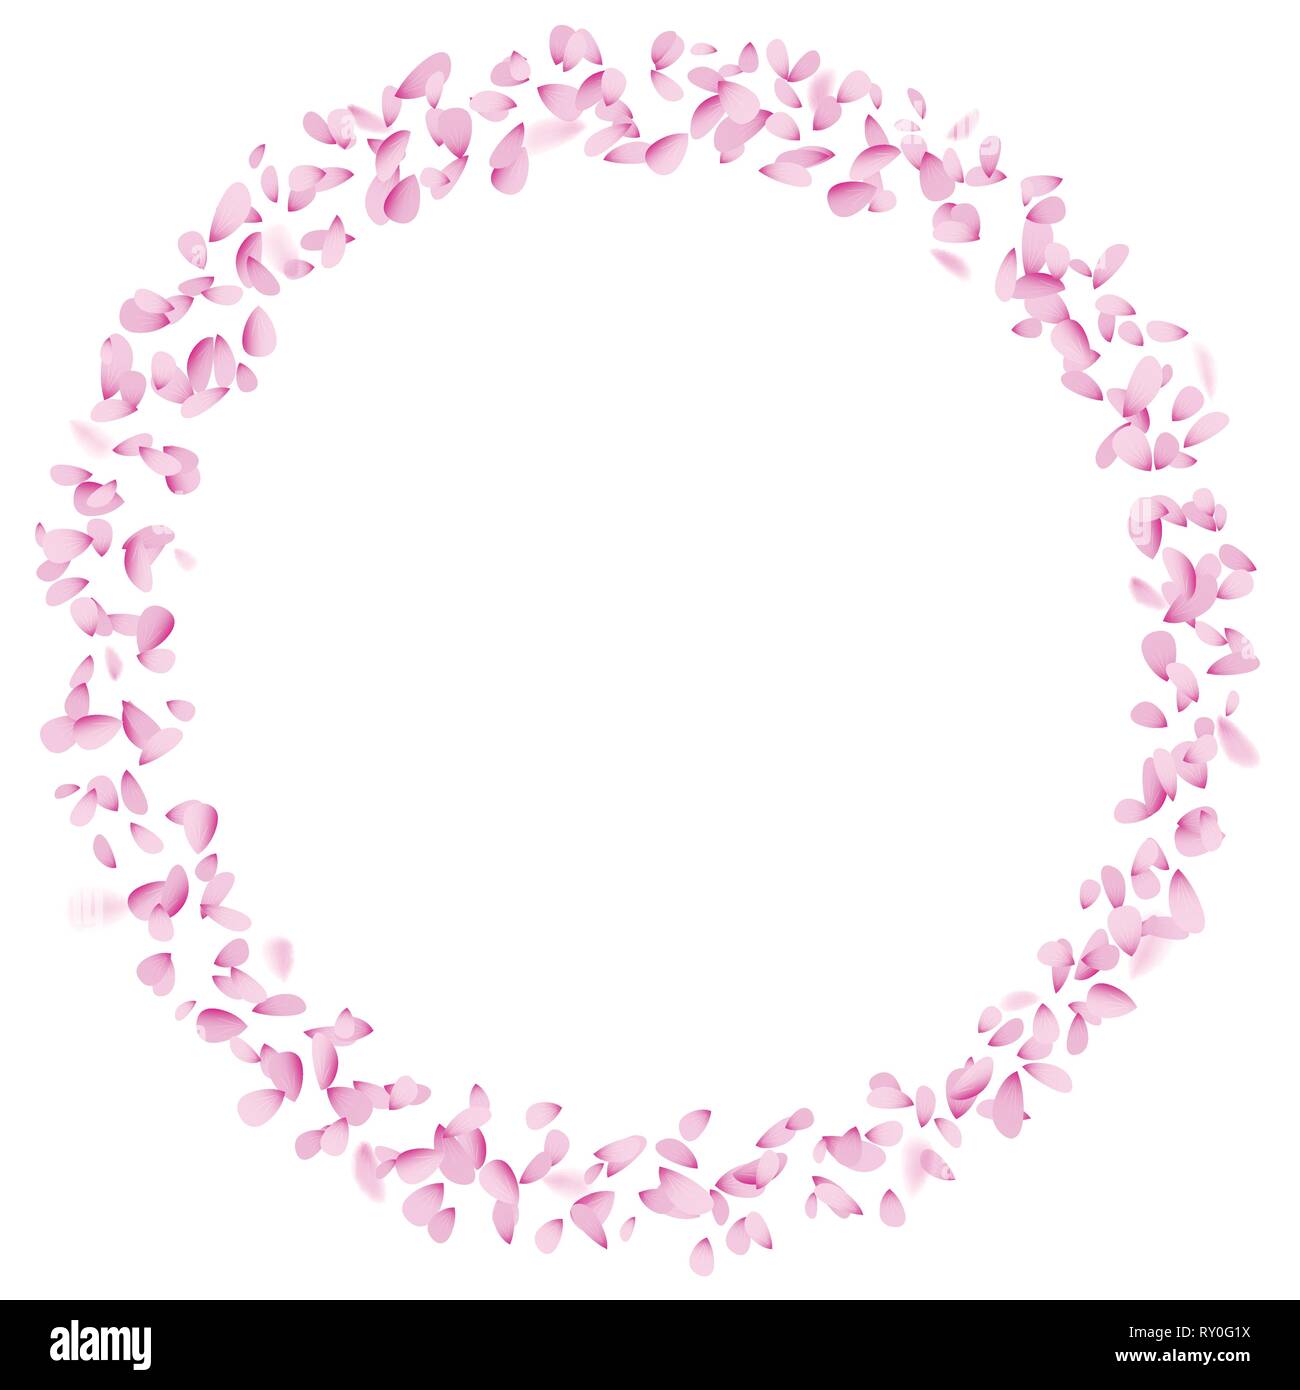 Progettare e stampare online Grazie, cuore, cerchio rosa, bordeaux,  bianco, cerchio adesivo